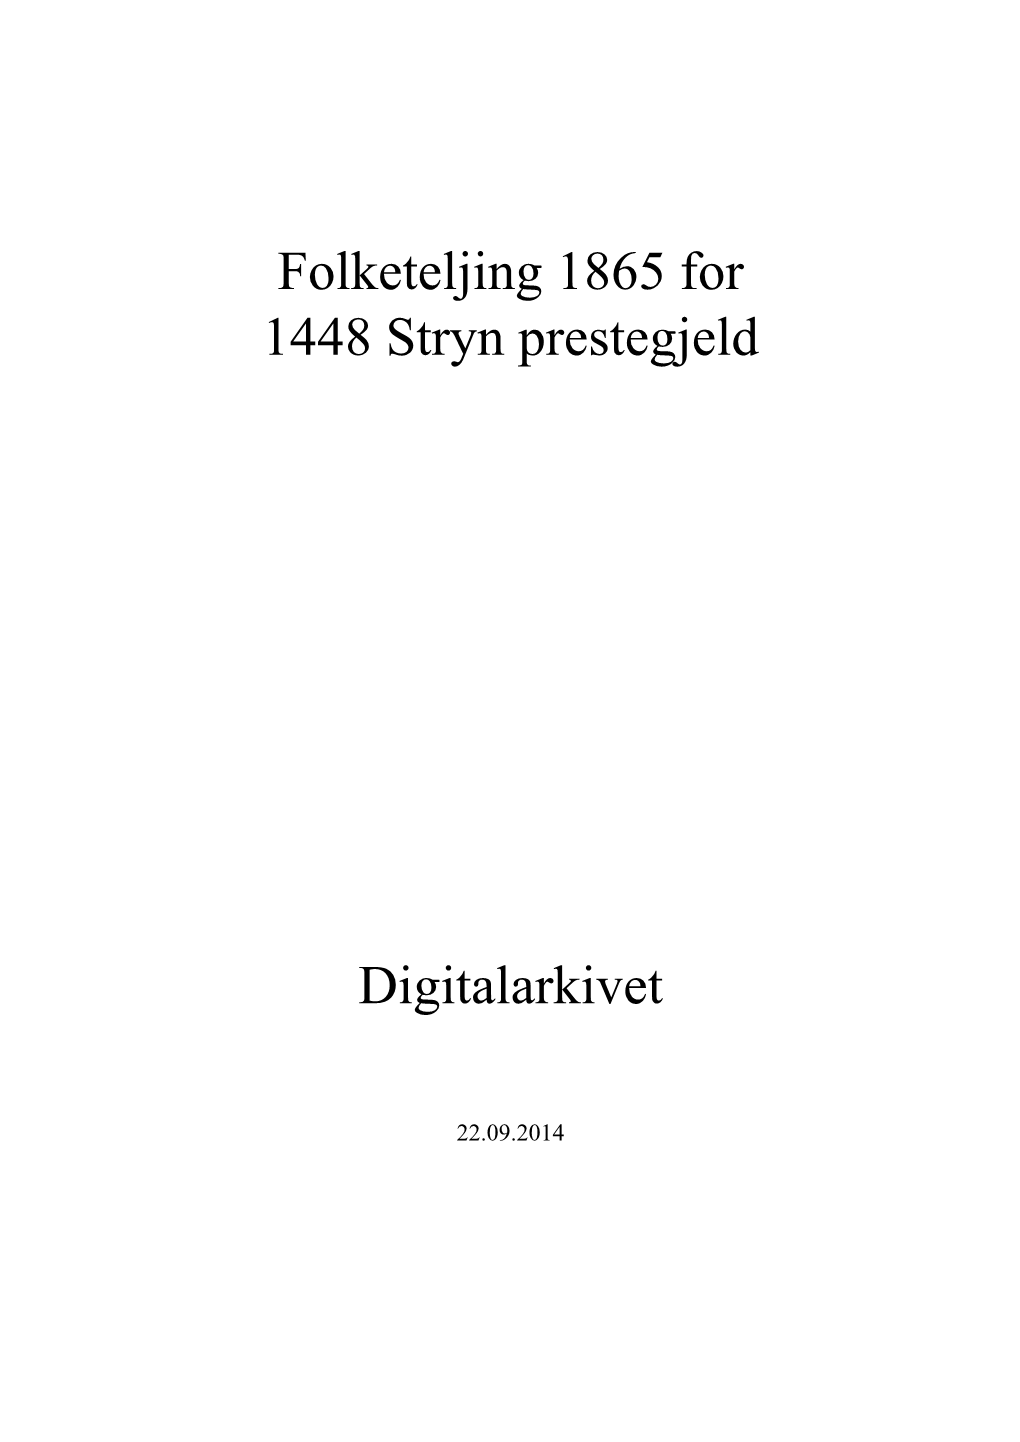 Folketeljing 1865 for 1448 Stryn Prestegjeld Digitalarkivet